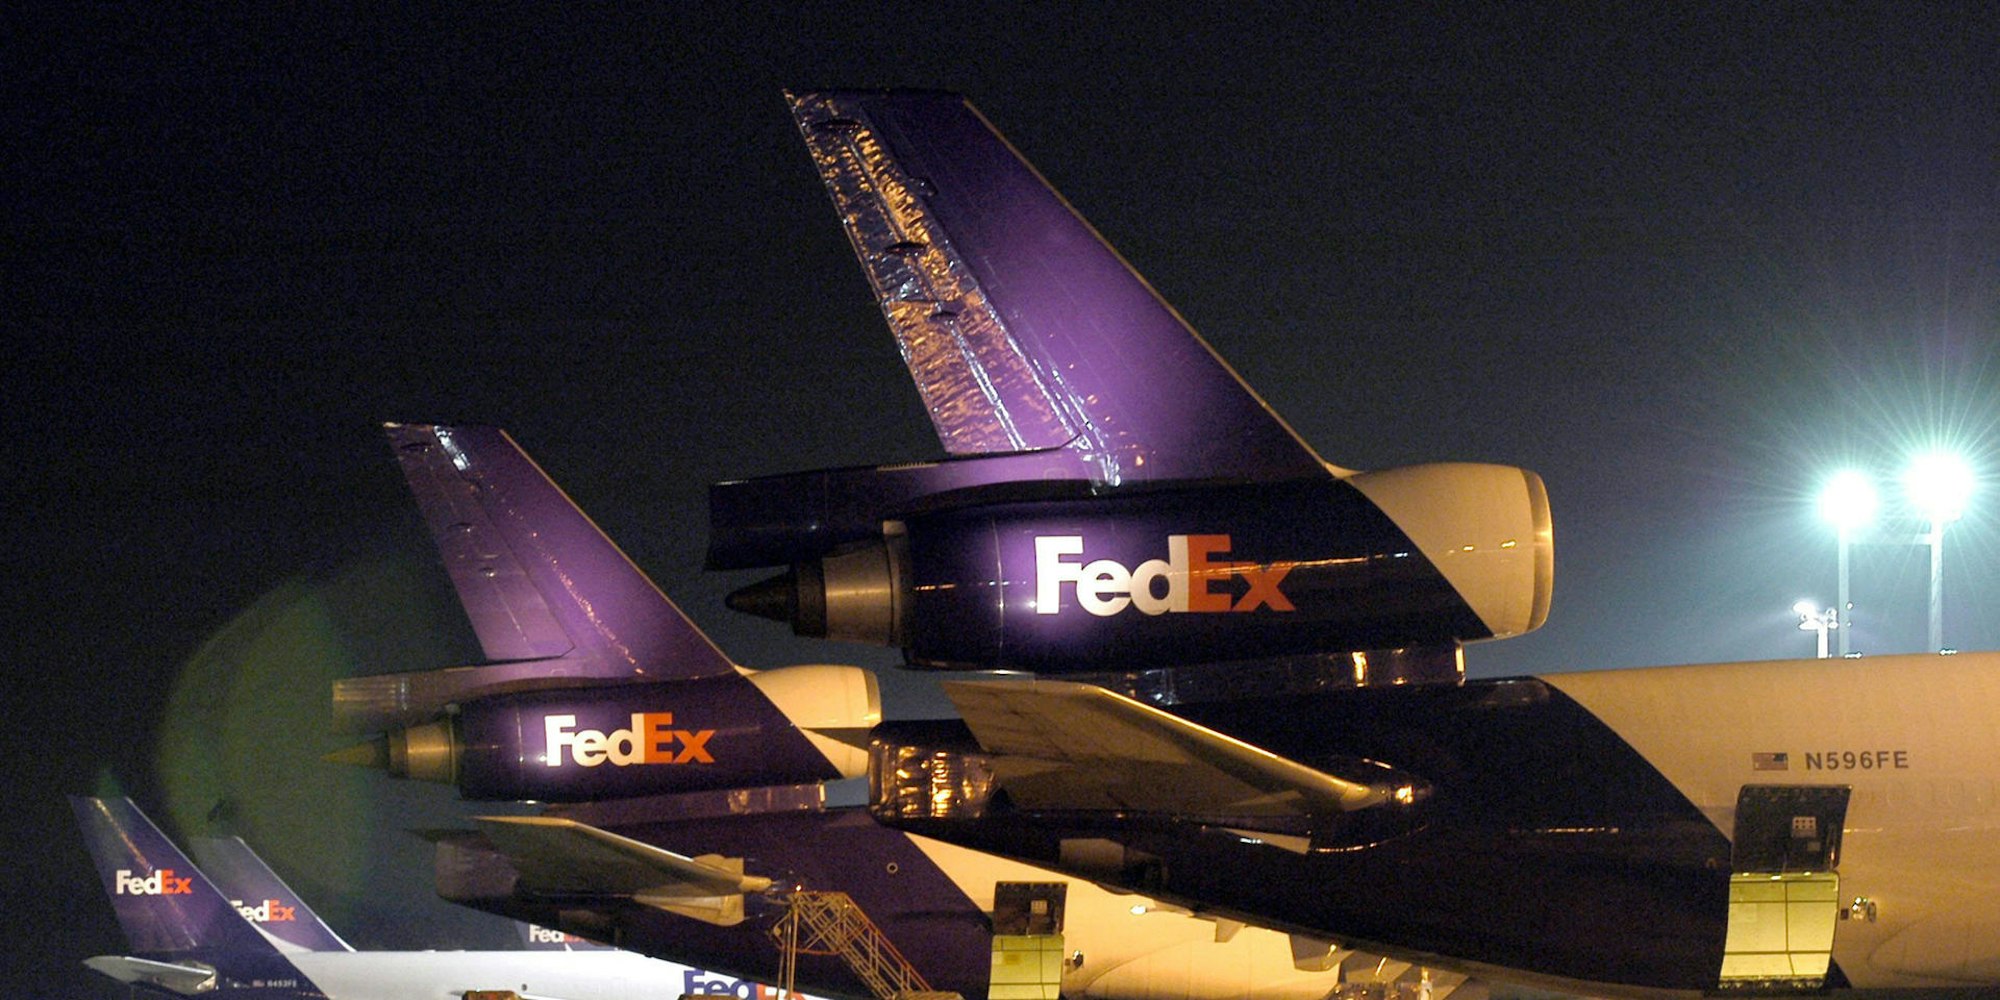 MD-11 FedEx